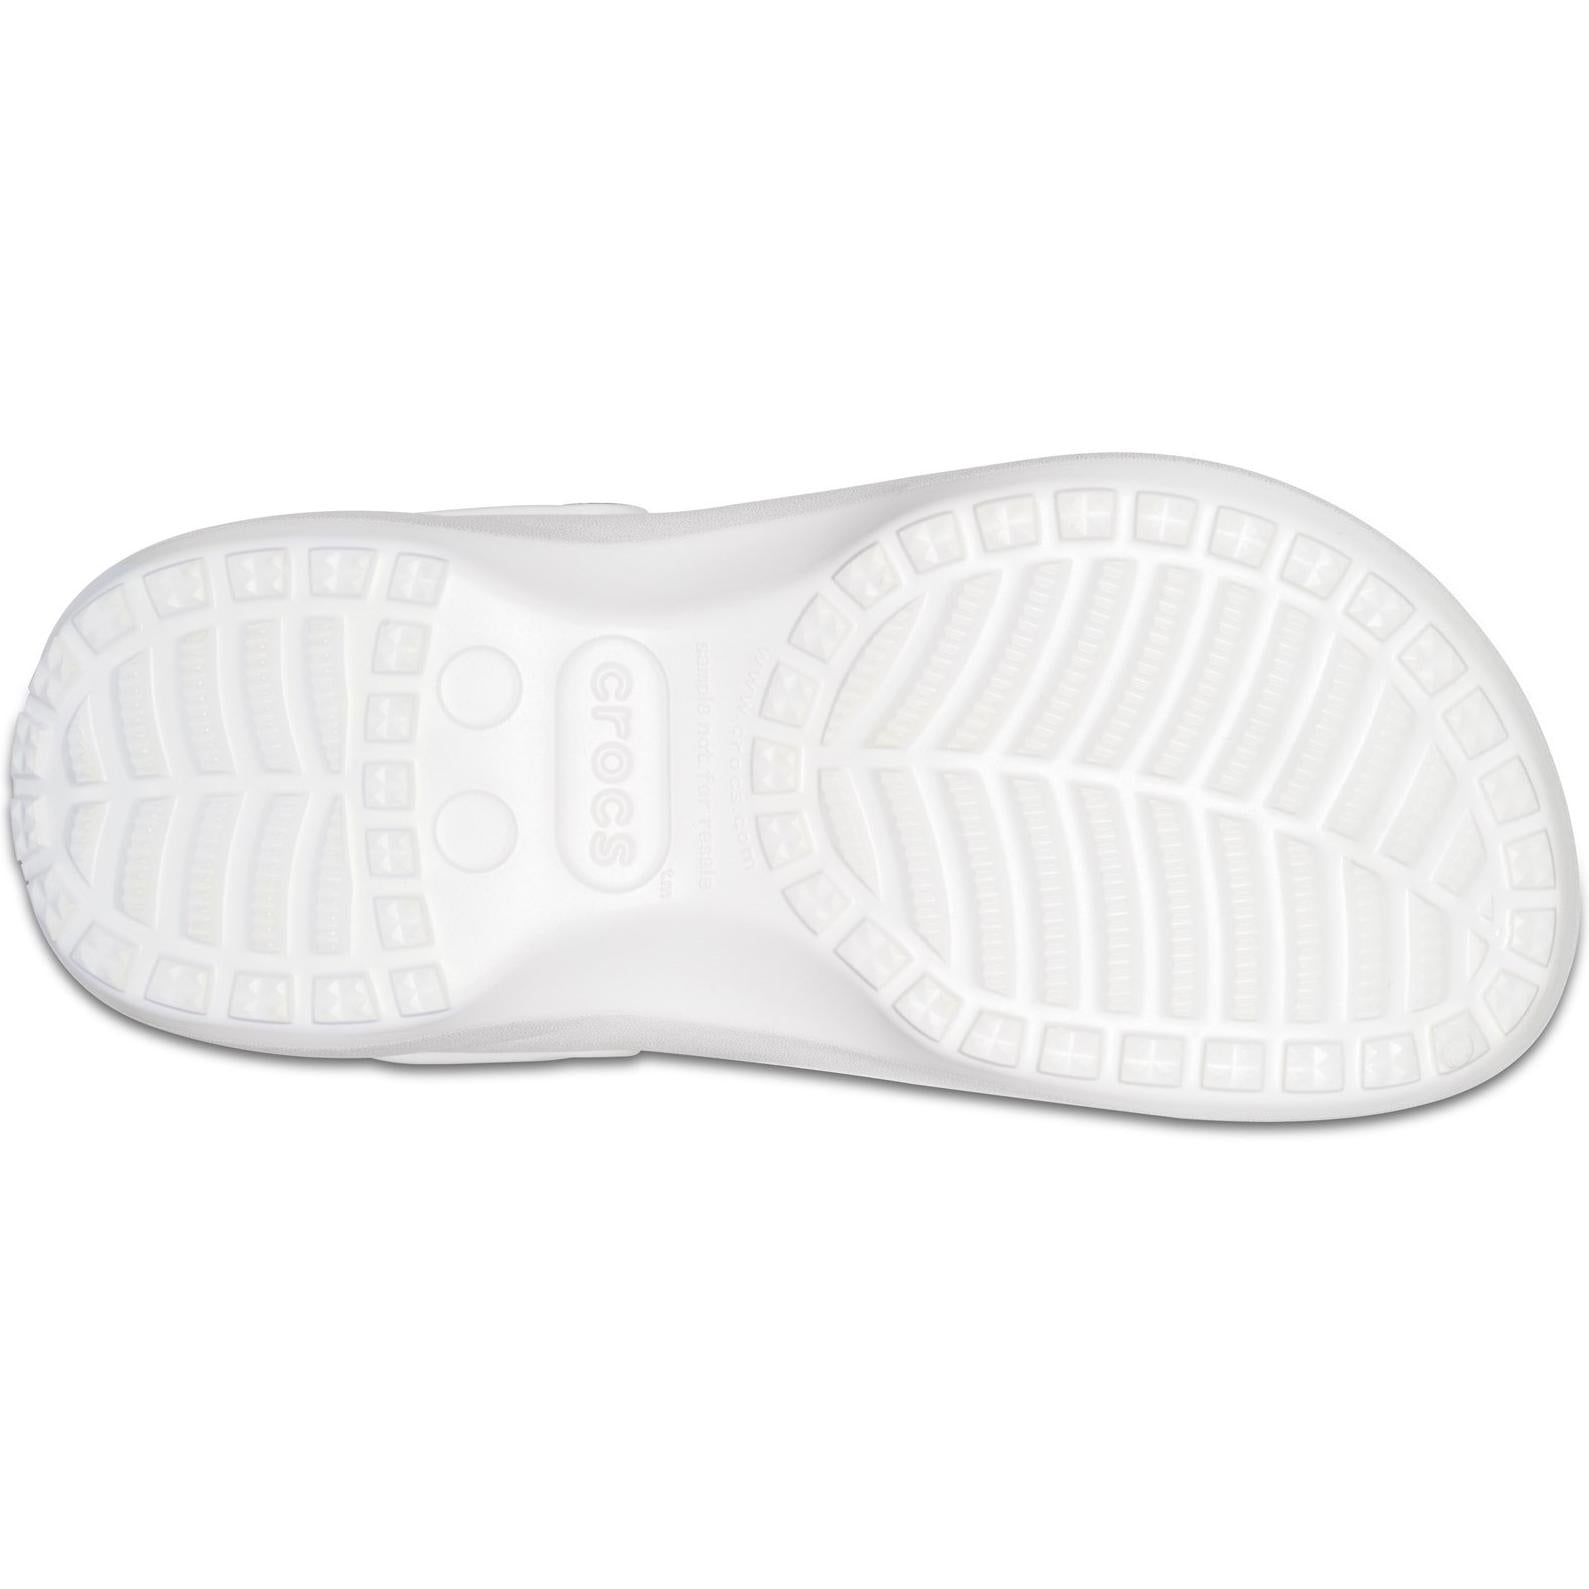 Crocs Classic Platform Lined Clog Sandals